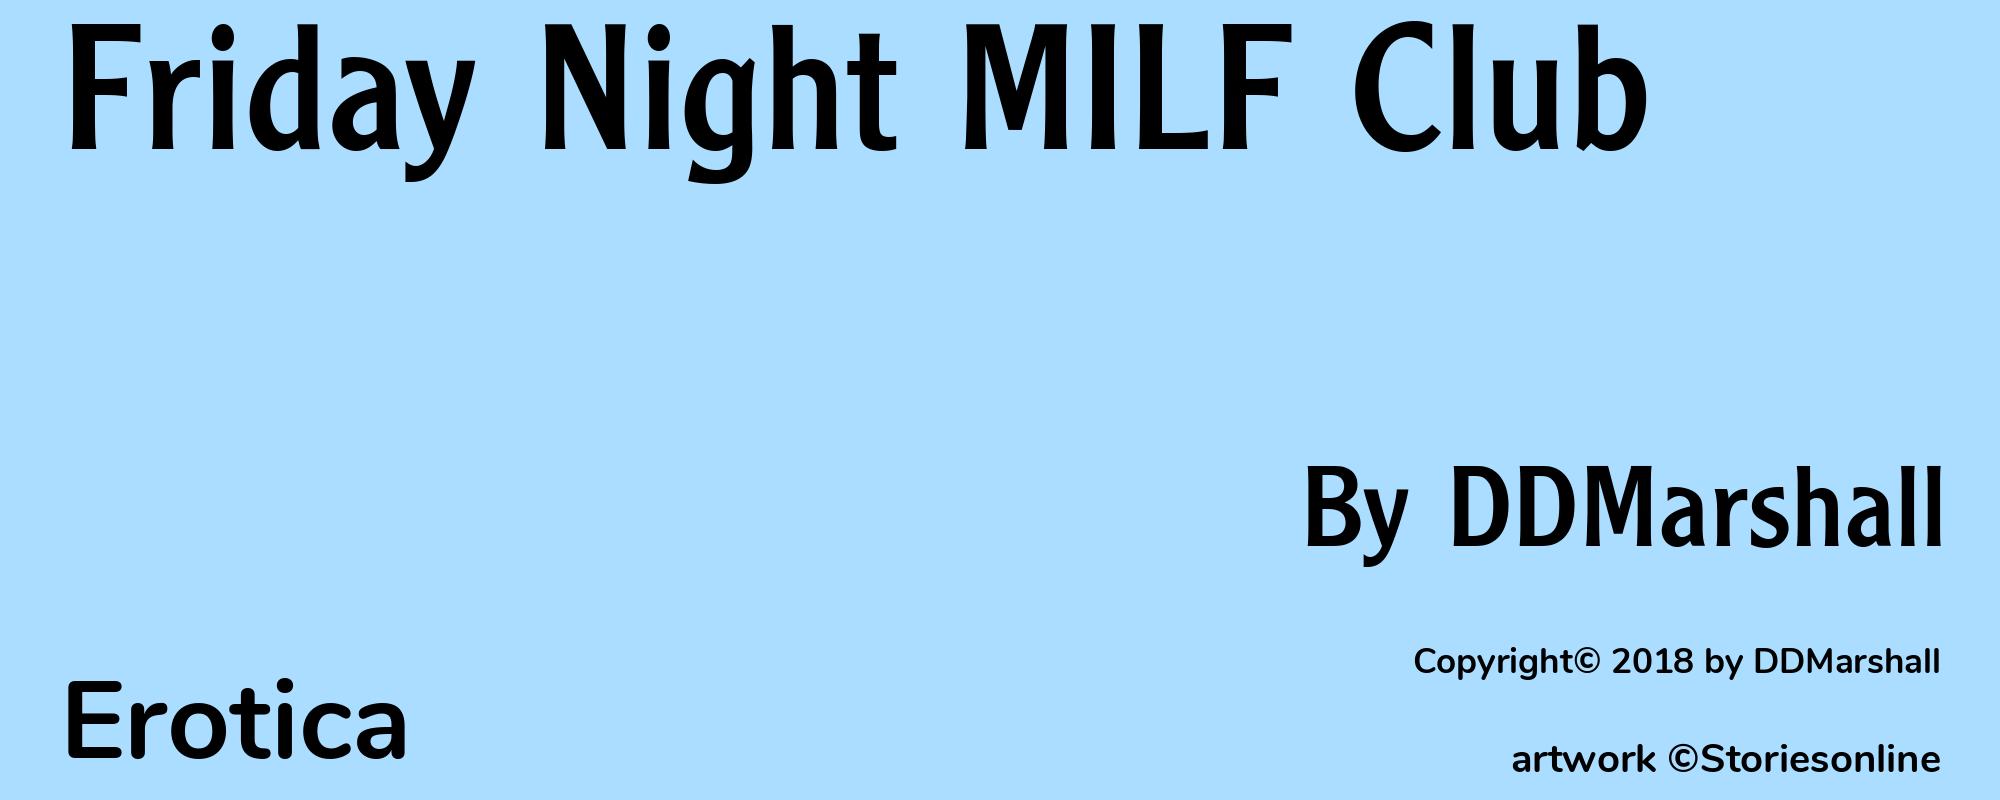 Friday Night MILF Club - Cover